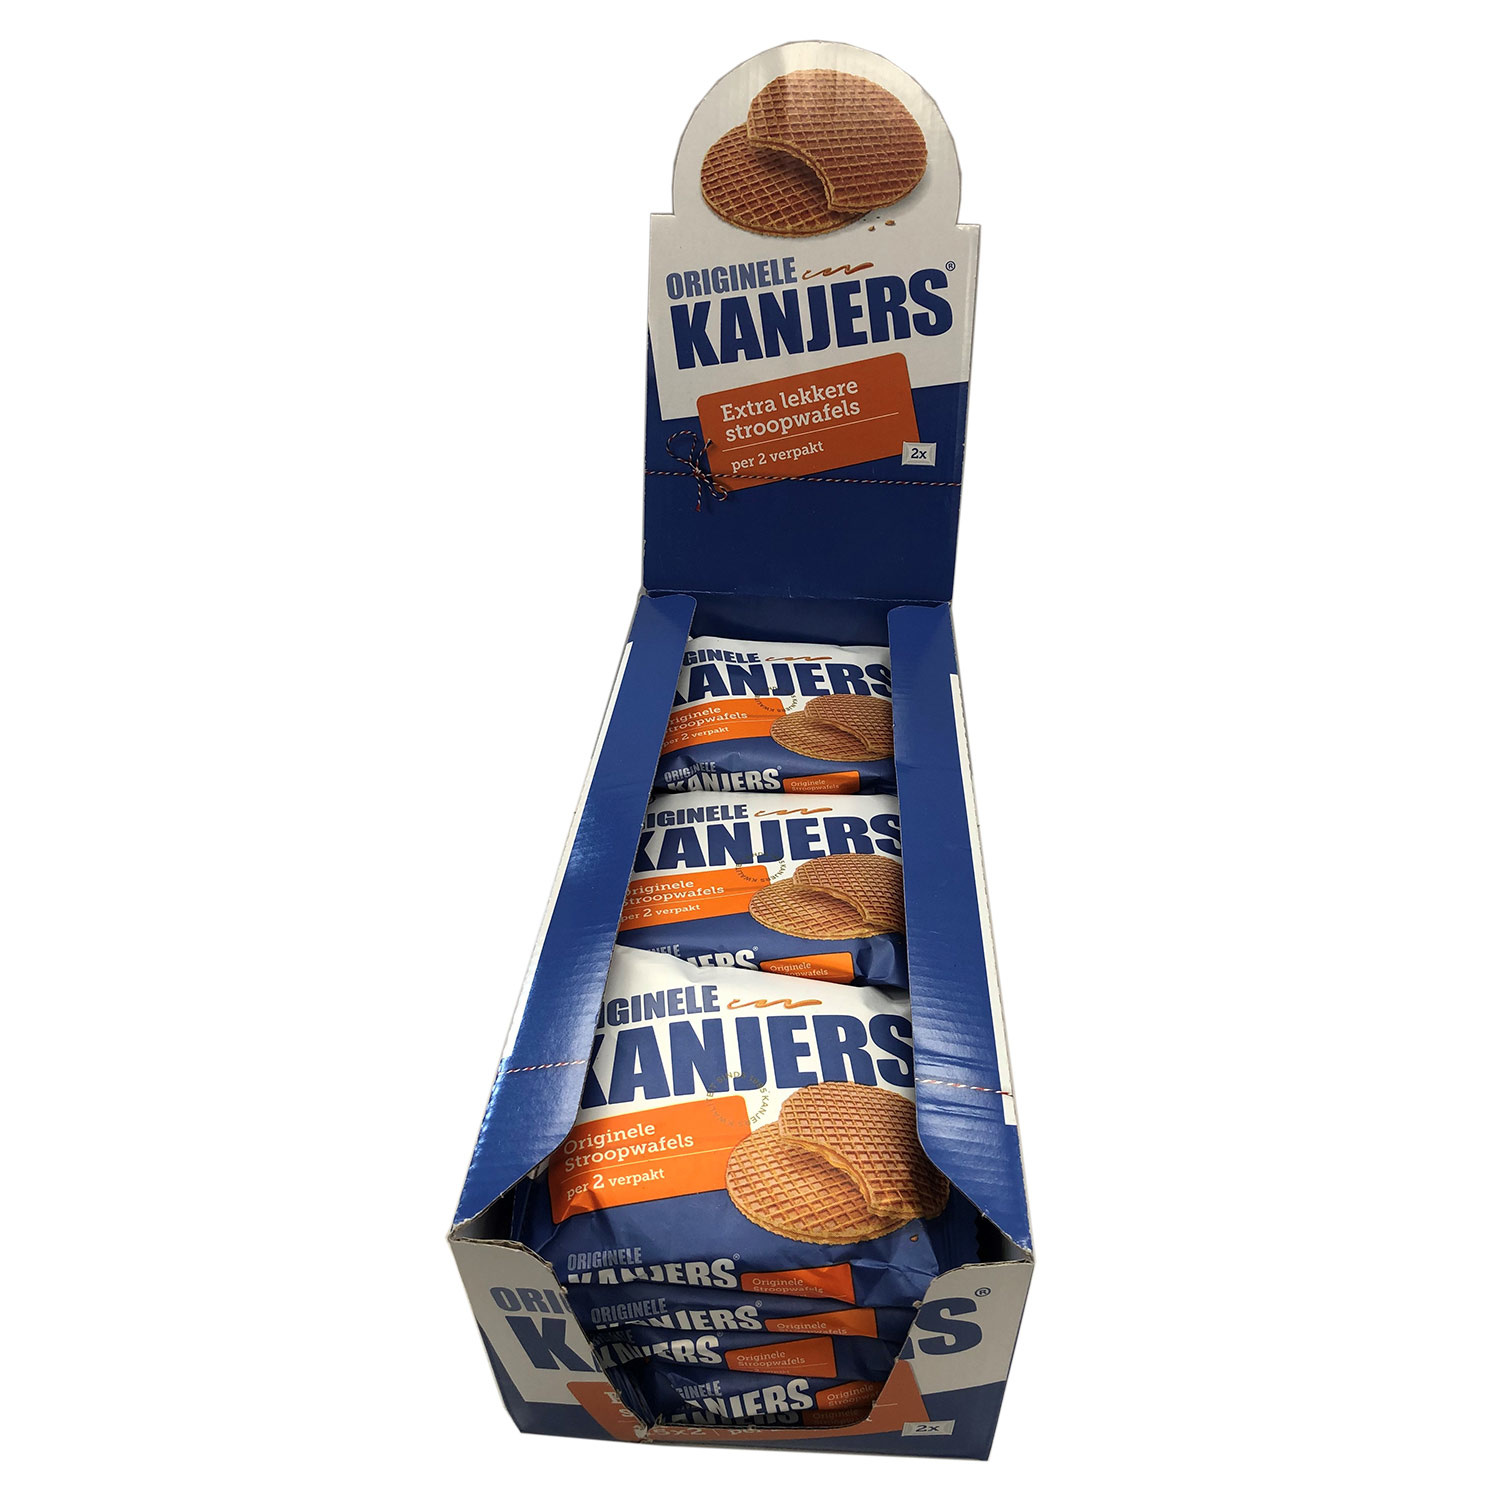 Kanjers Kanjers Chocolate & Kanjers Original Displaybox Deal